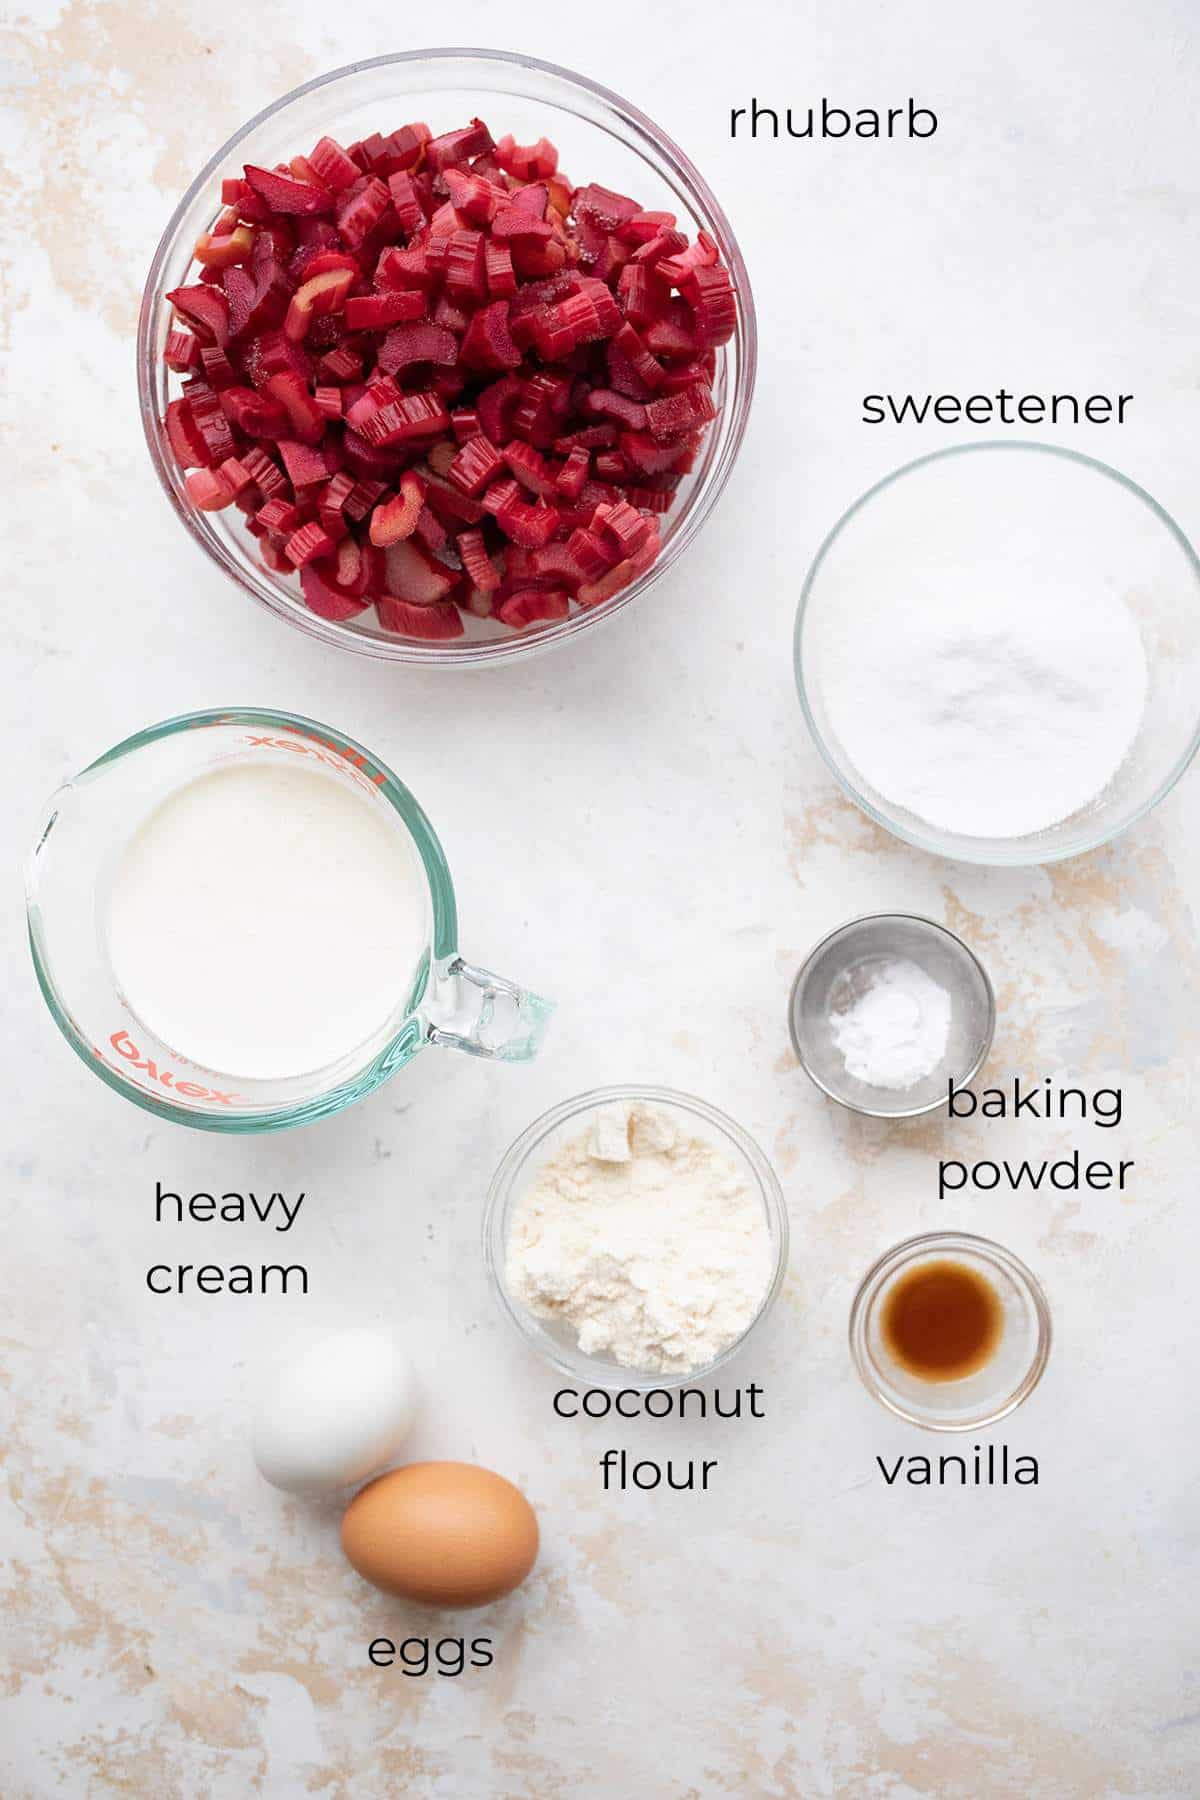 Top down image of ingredients for Rhubarb Custard Pie.